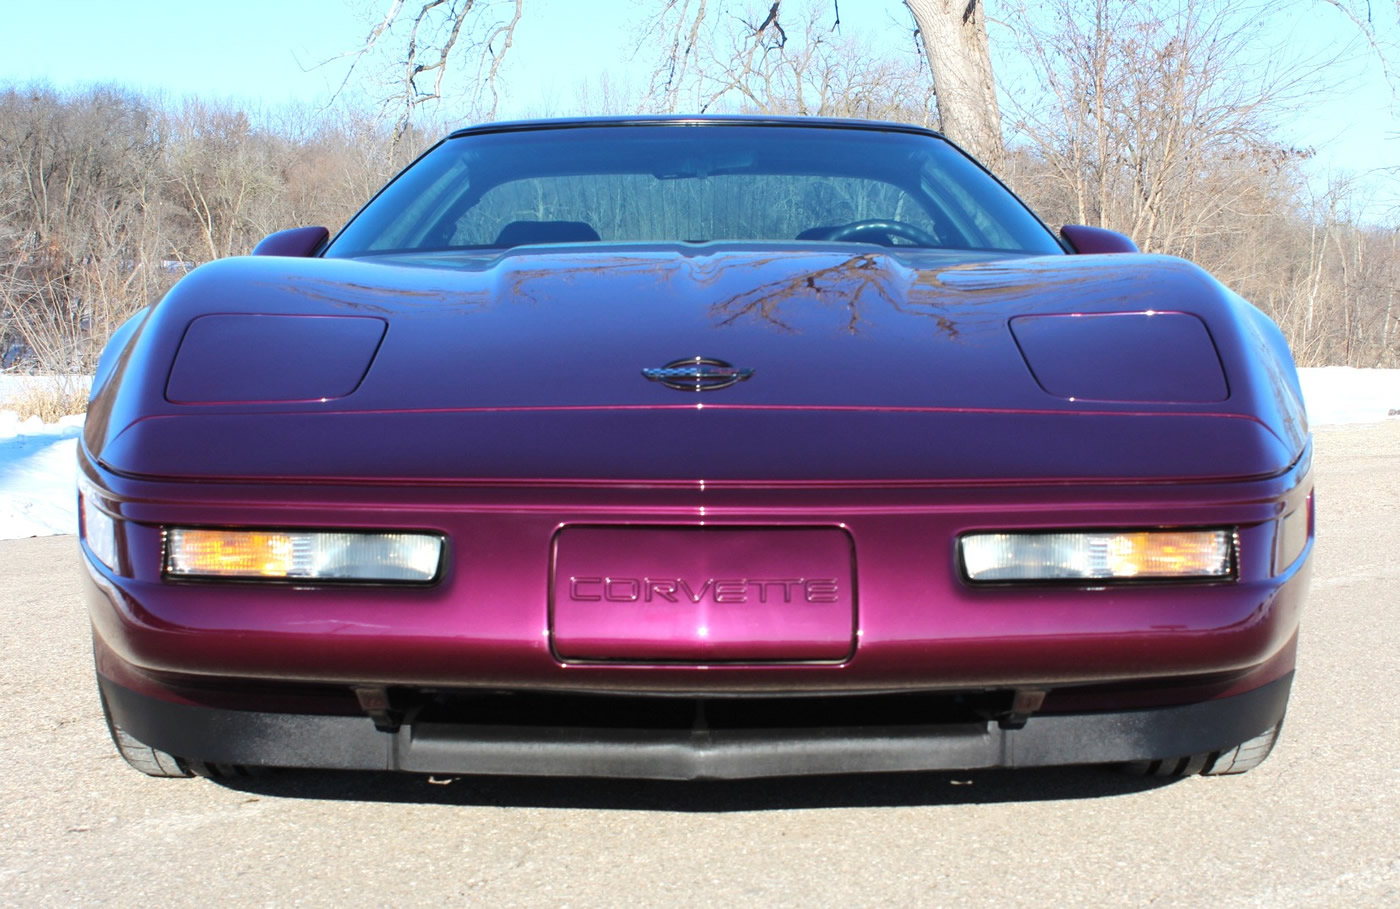 1996 Corvette Coupe in Dark Purple Metallic